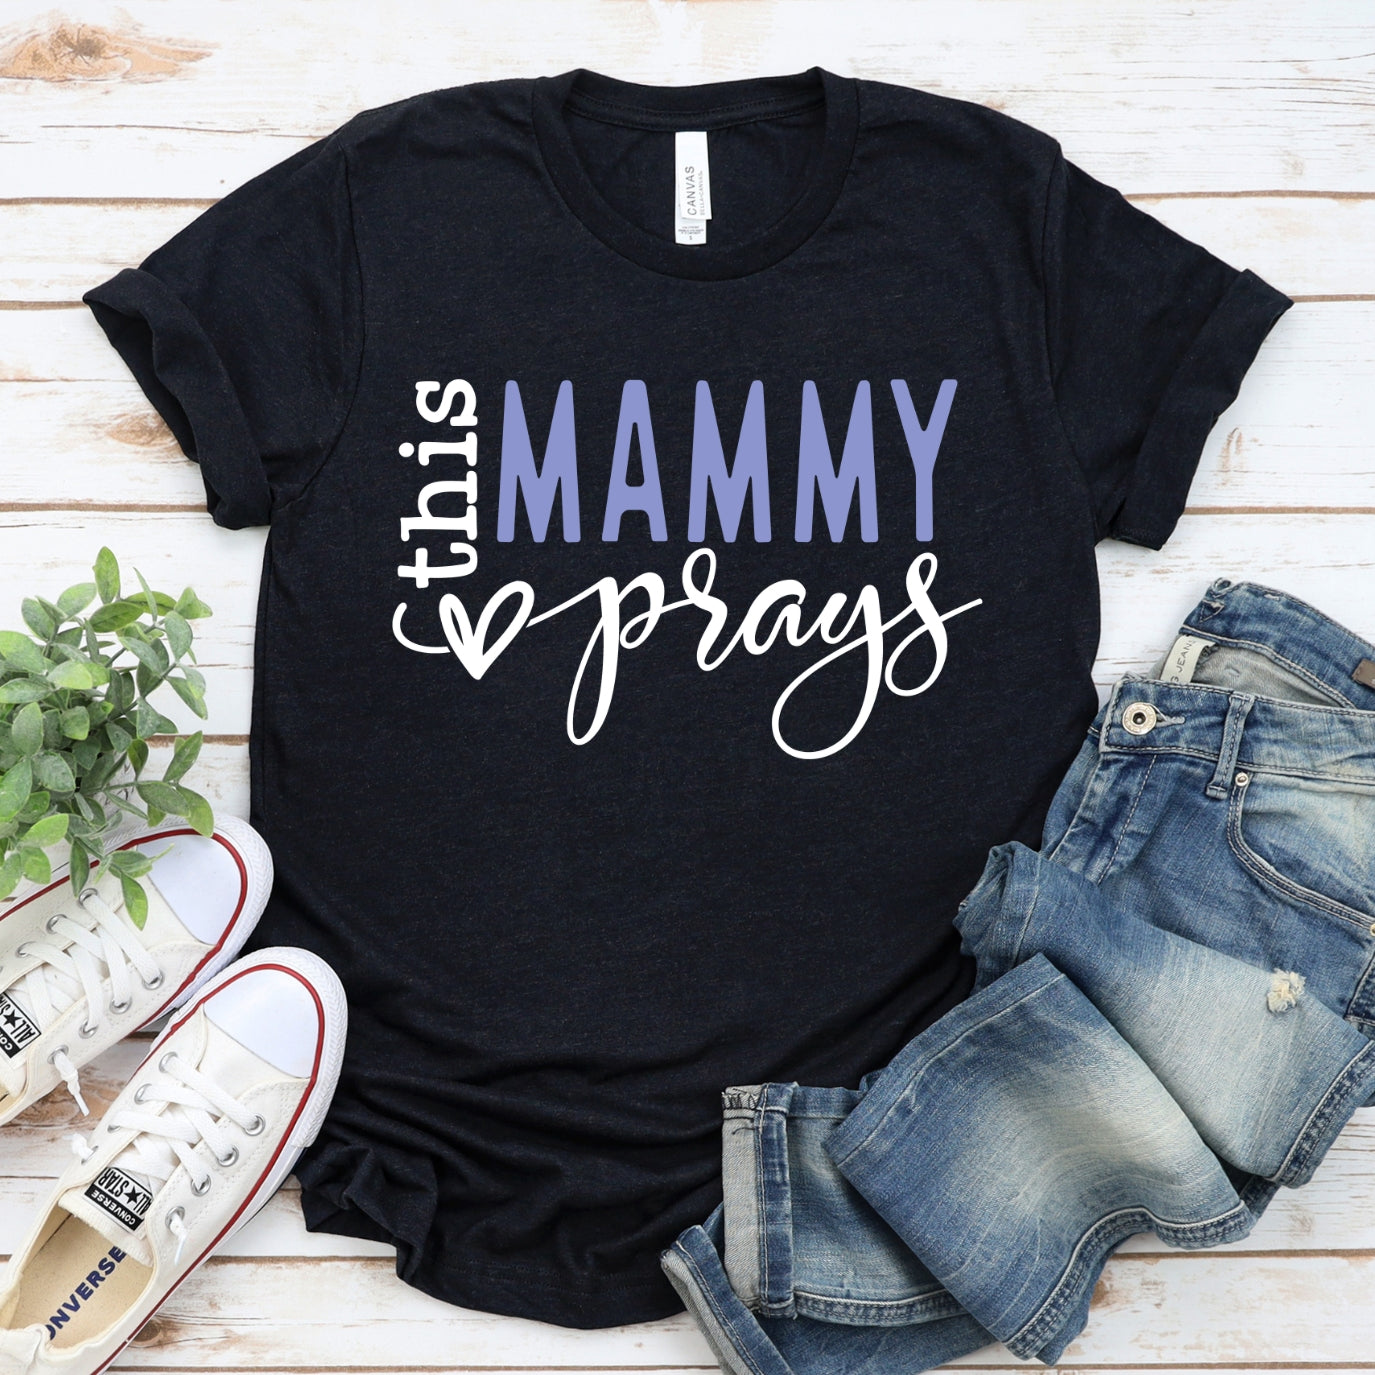 This Mammy Prays Women's T-Shirt